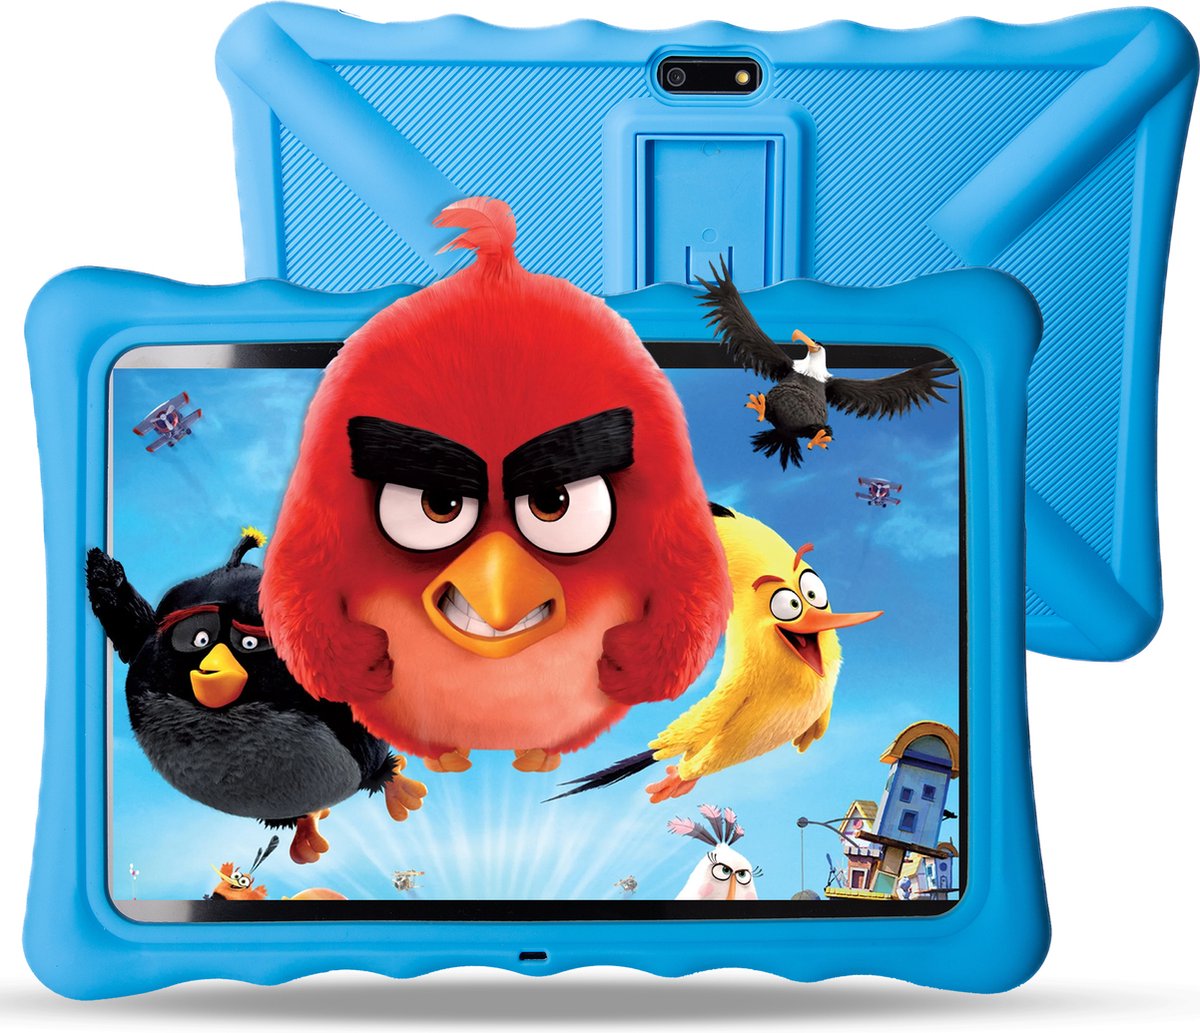 LUVIQ Kindertablet 10.1 Inch - 32GB - 5000MAH Batterij - 256GB Micro SD Slot - Ouderlijk Toezicht - Tablet voor Kinderen vanaf 3 jaar + Blauwe 100% Kidsproof Hoes & USB-C Oplader - LUVIQ